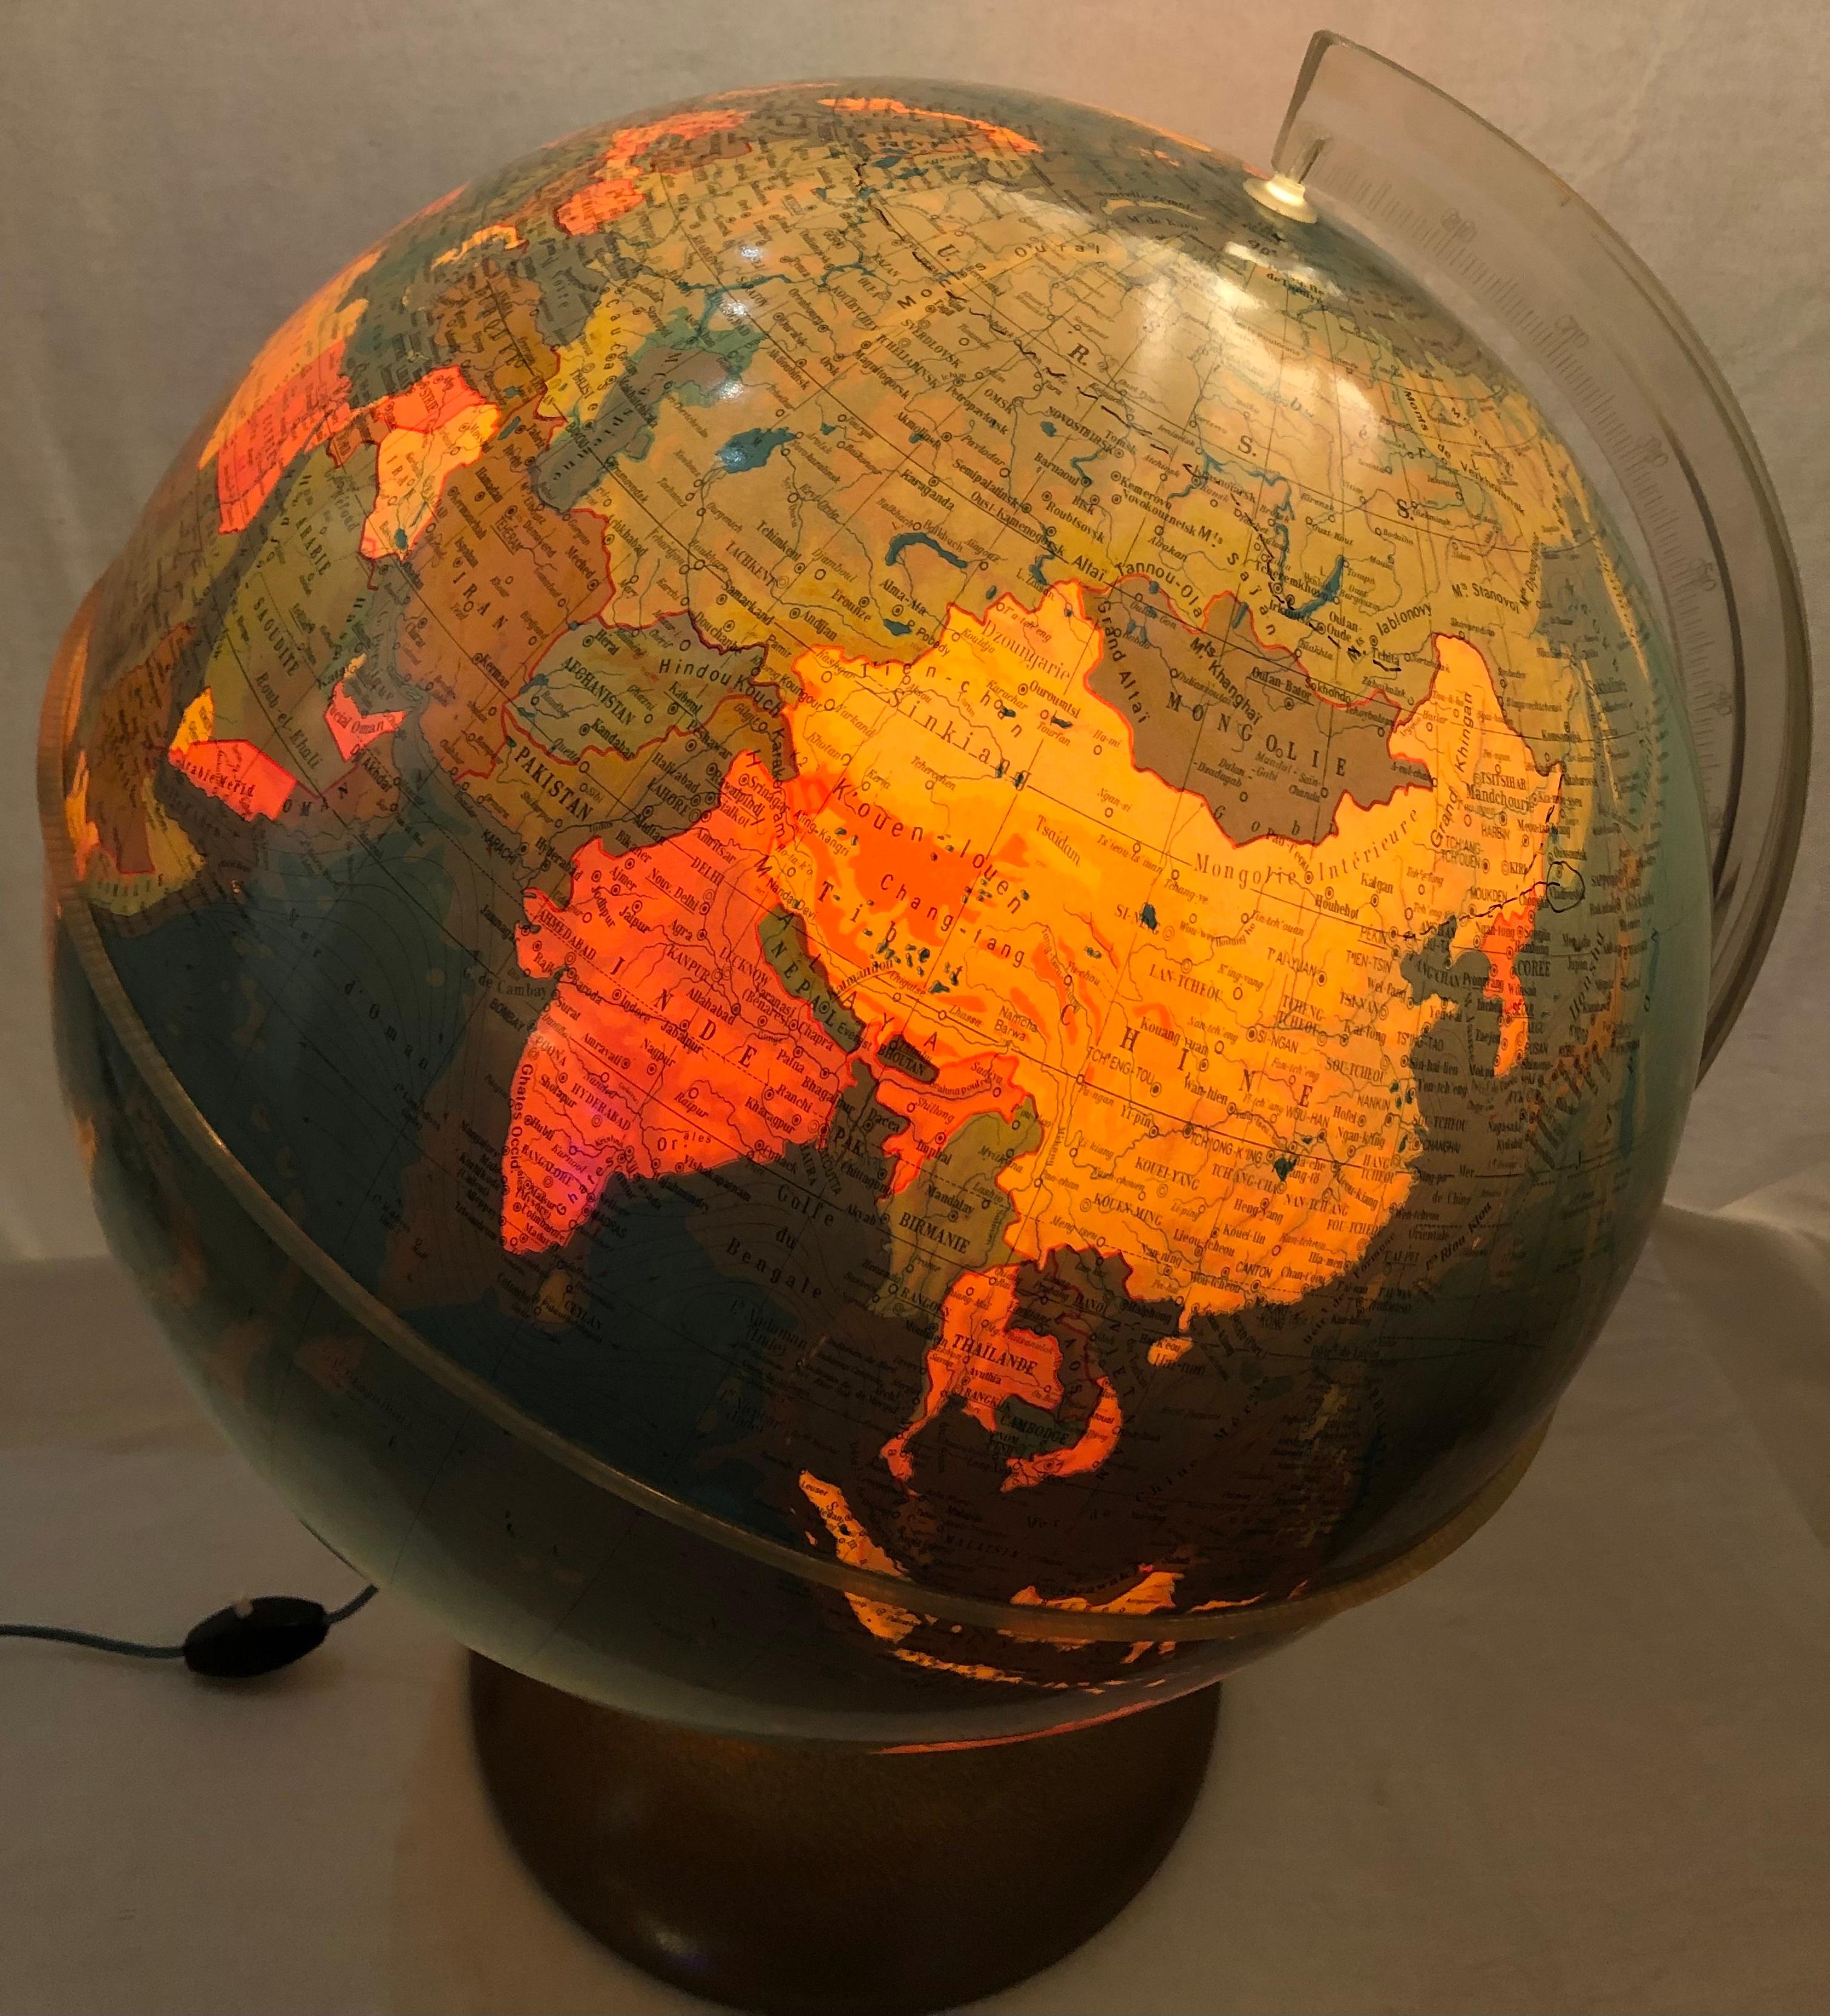 Gute Qualität Weltkarte Globus Lampe. 

Wenn Sie auf der Suche nach einem stilvollen und qualitativ hochwertigen Gegenstand sind, um Ihr Interieur aufzuwerten (ob zu Hause oder in Ihrem Büro), dann könnte dieser Pariser Globus ideal sein. Würde auch